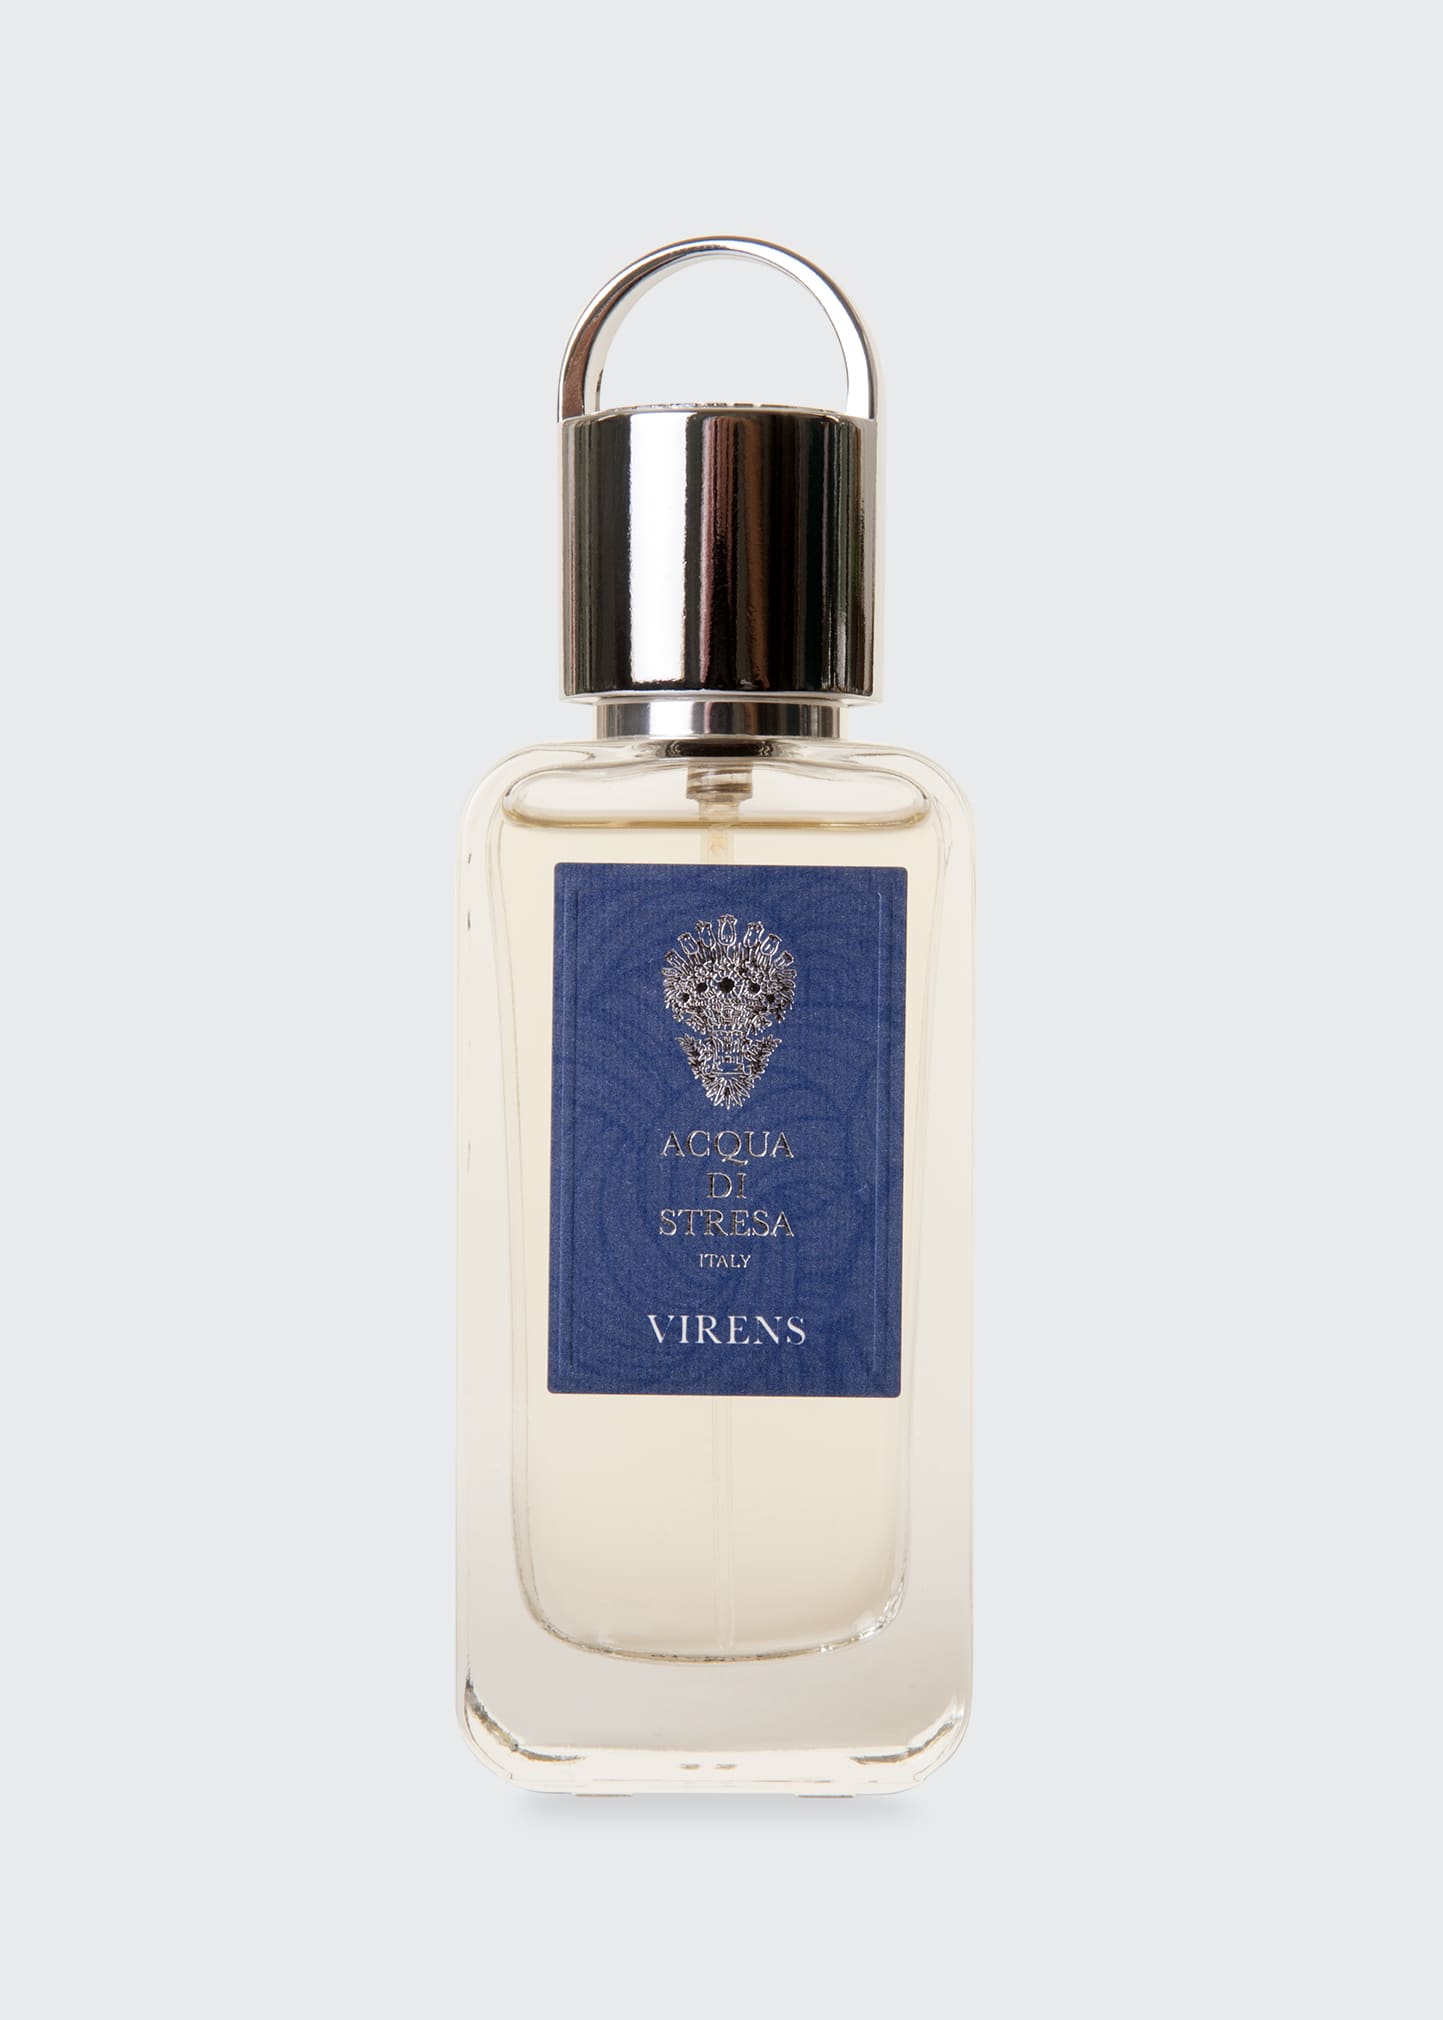 Acqua Di Stressa Virens Eau De Parfum, 1.7 Oz./ 50 ml